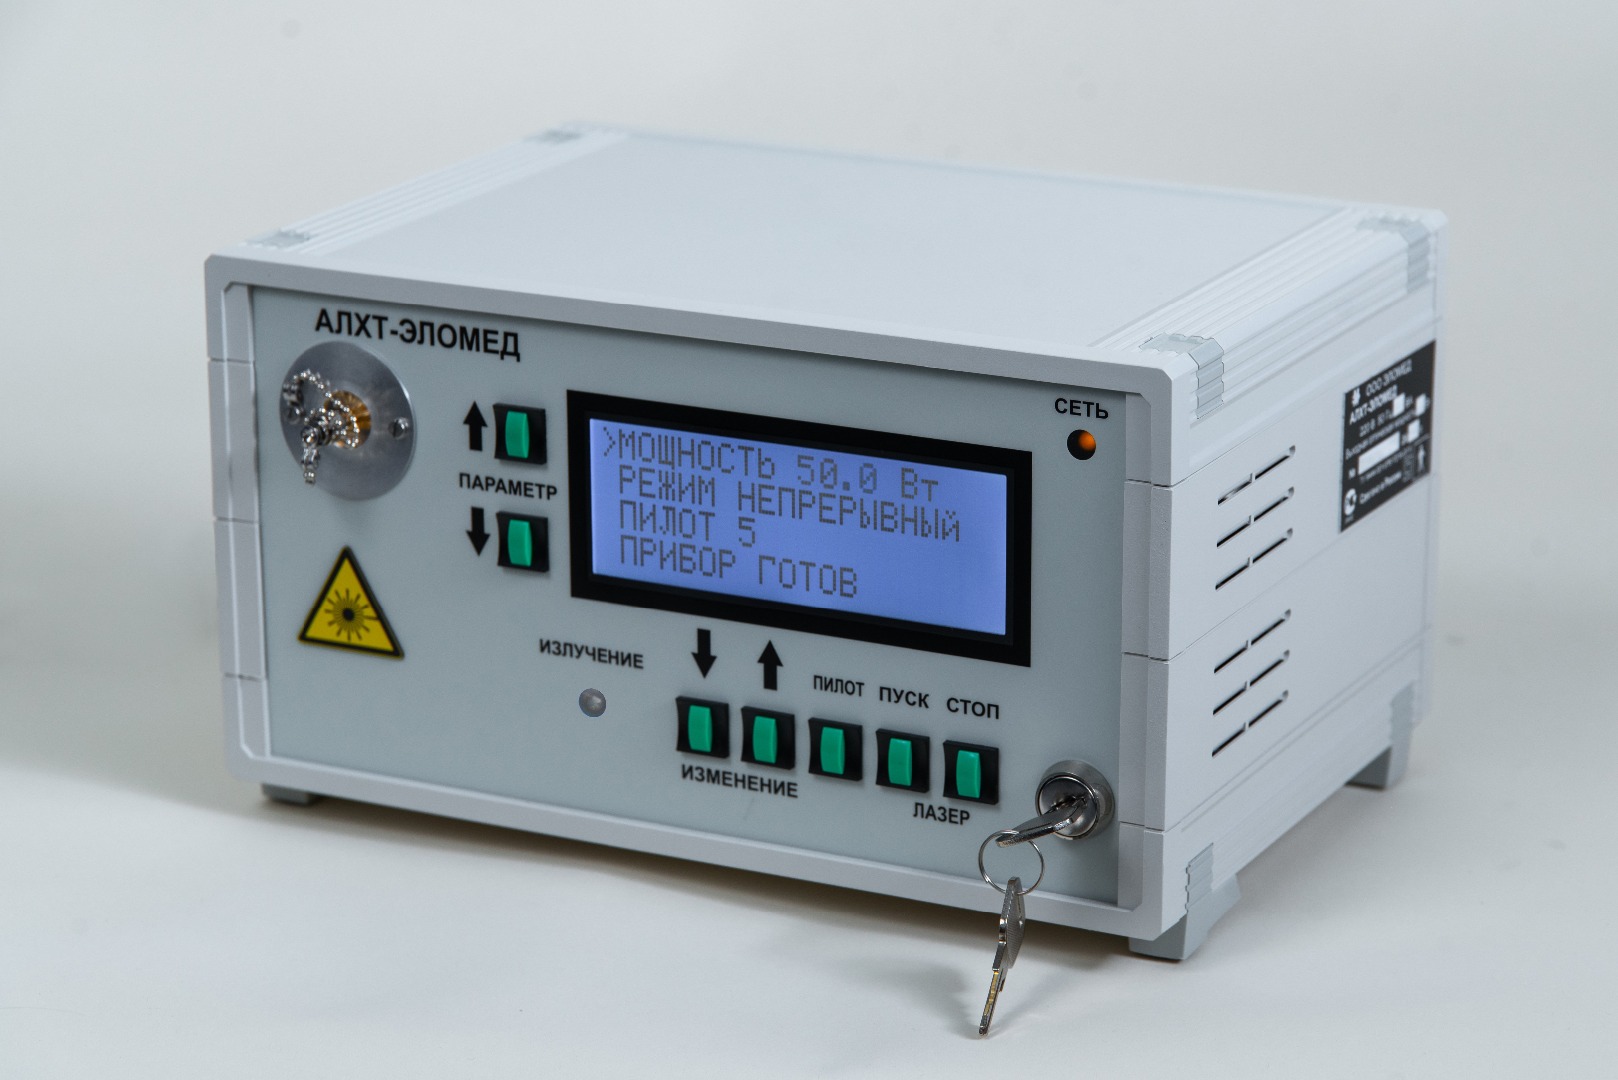 Лазерный аппарат АЛХТ-Эломед для трансуретральной лазерной абляции